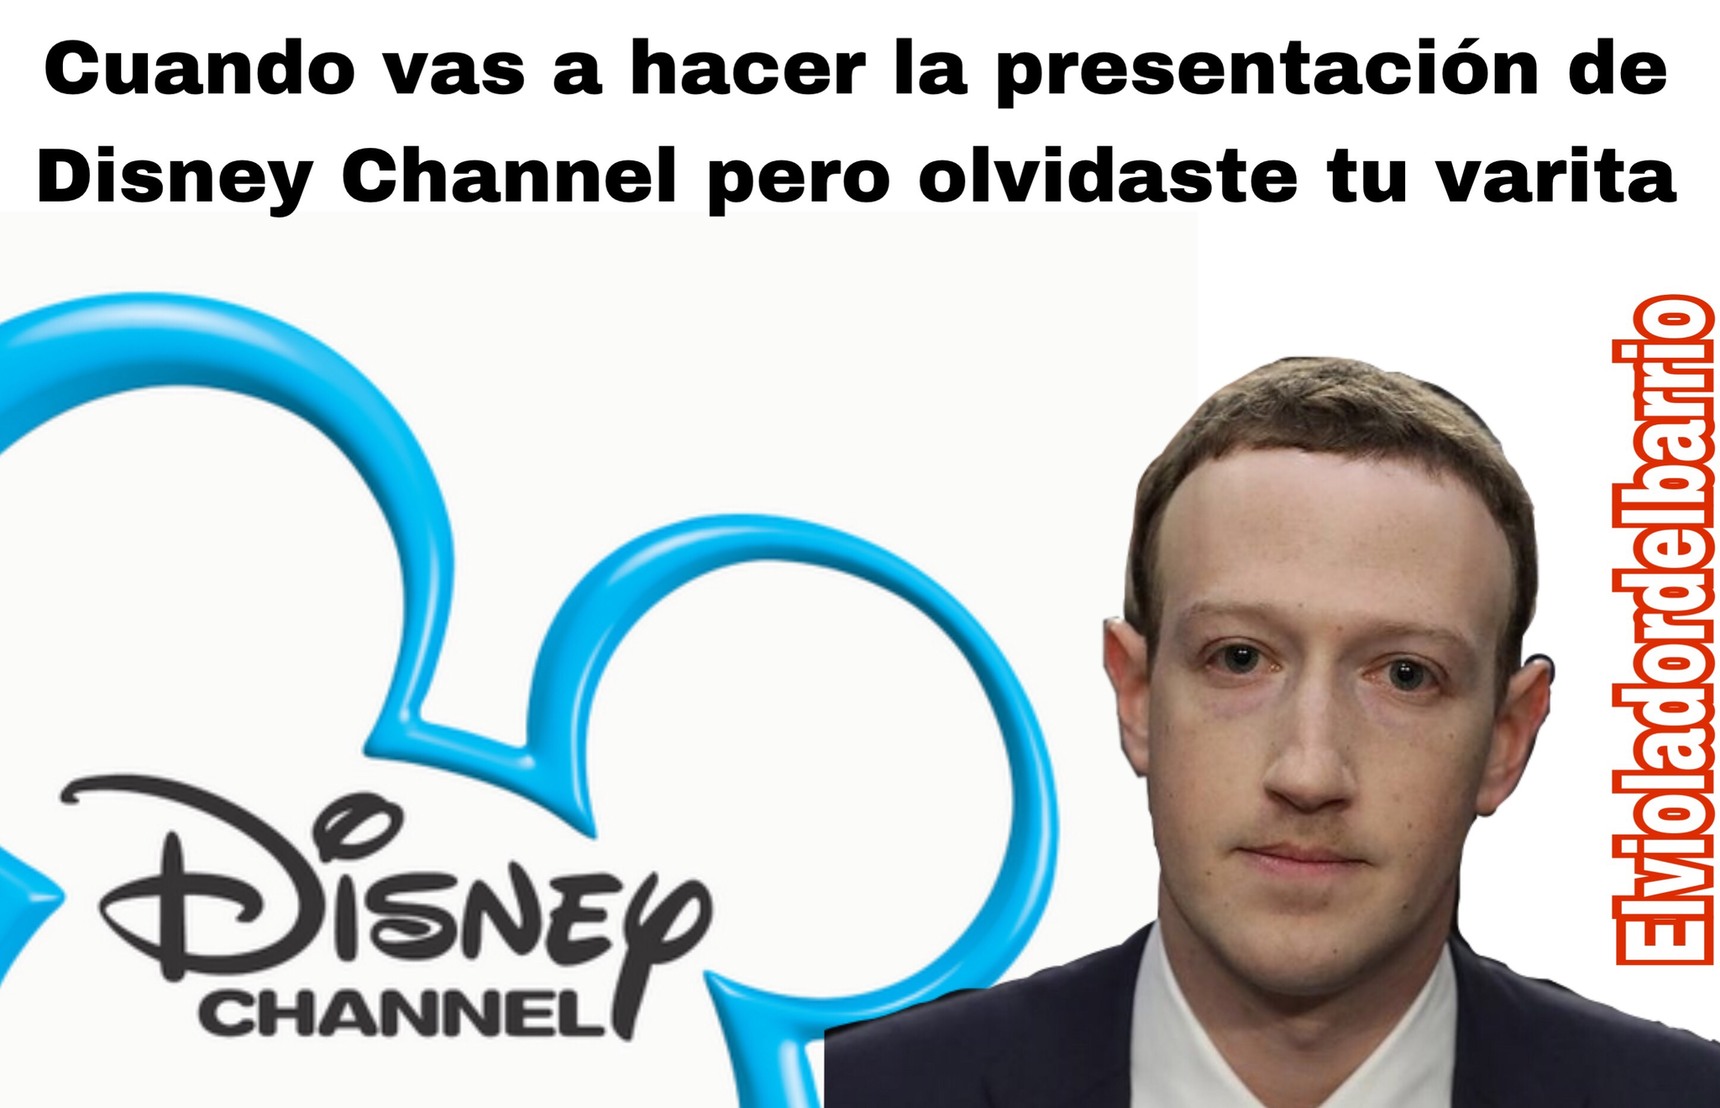 Hola, soy Marck Zuckerberg y estas viendo Disney Channel - meme